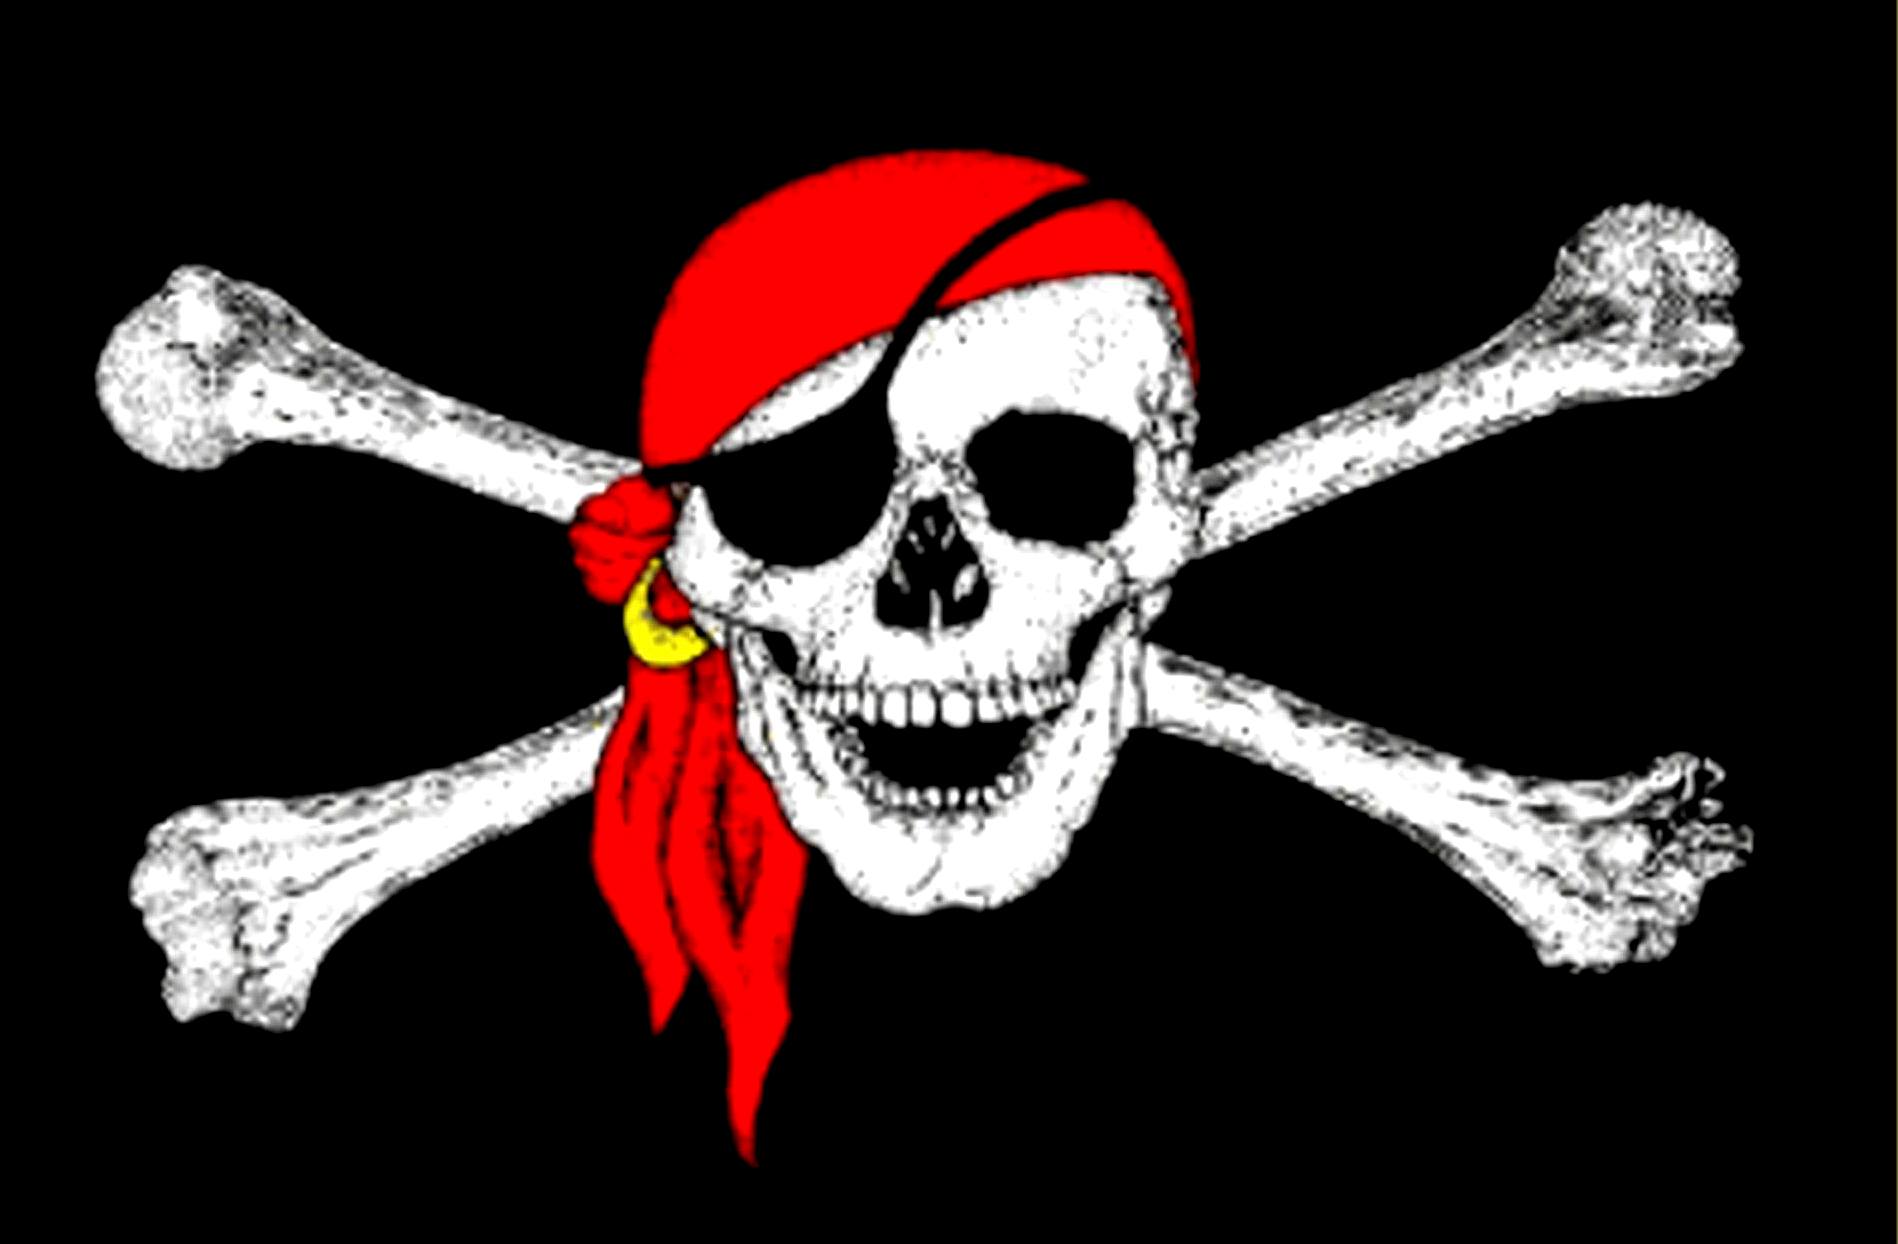 Captain Jack Sparrow's Jolly Roger